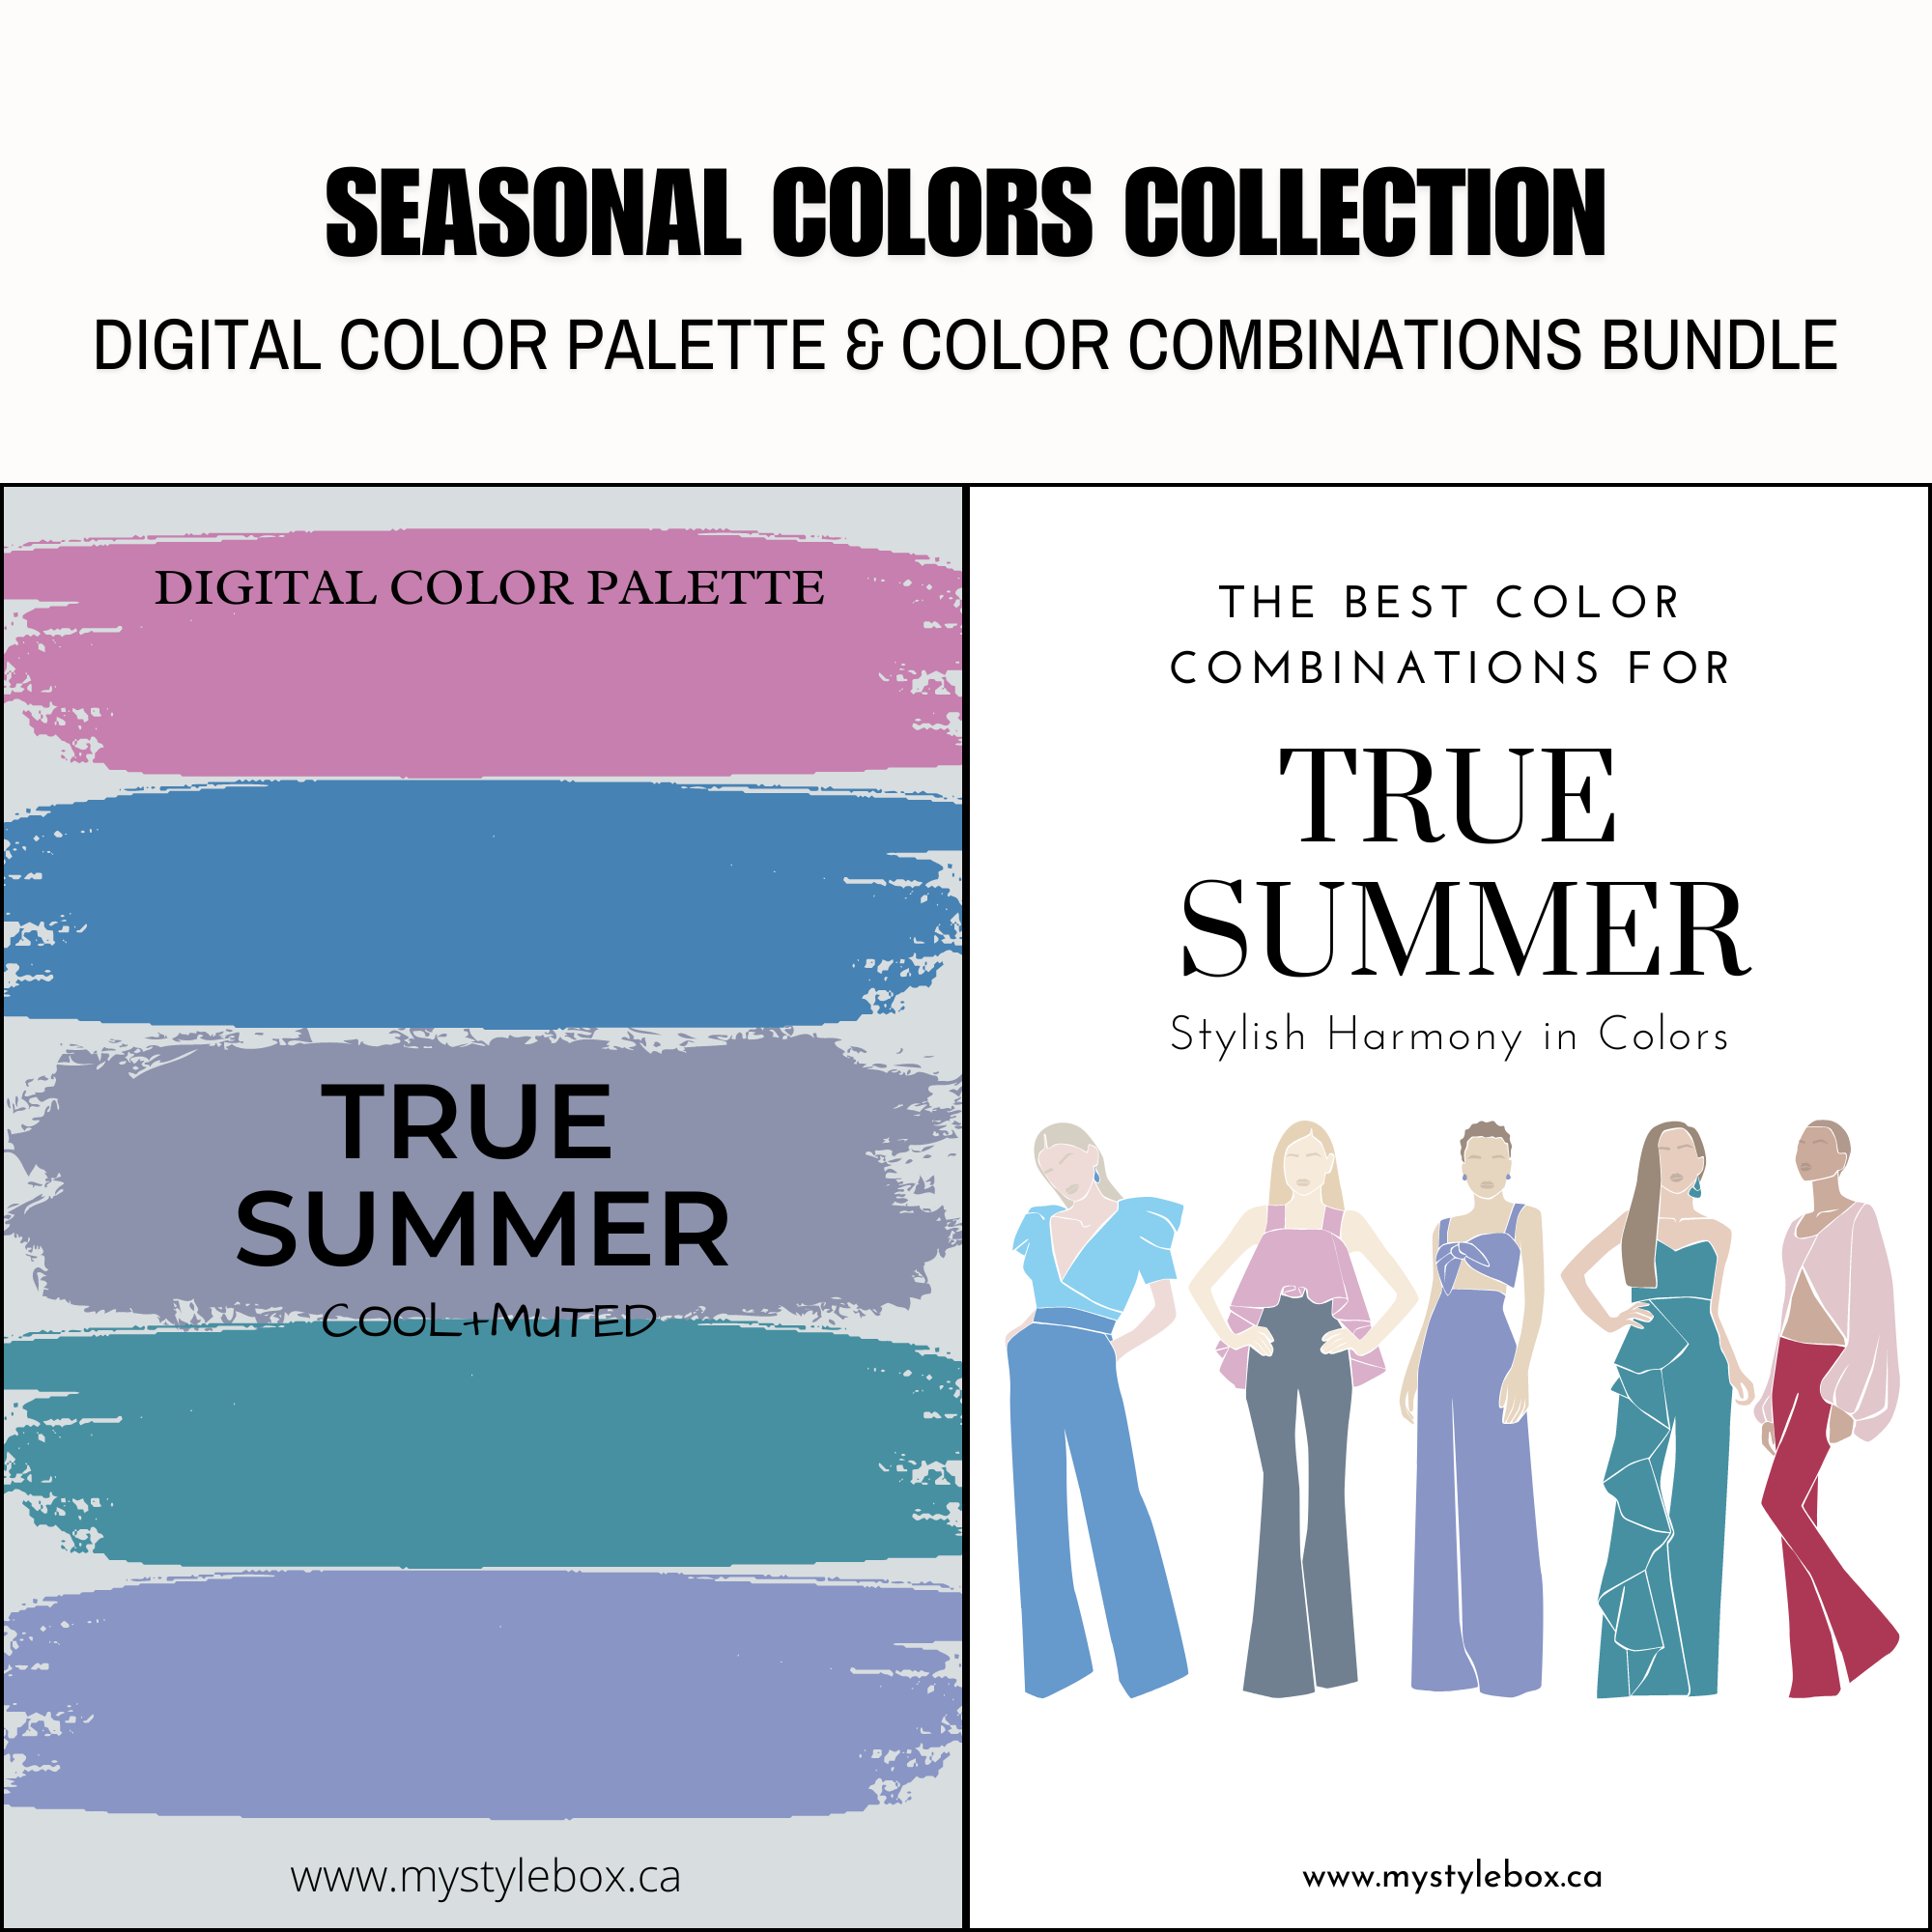 Paquete de paleta de colores digitales y combinaciones de colores True Summer Season